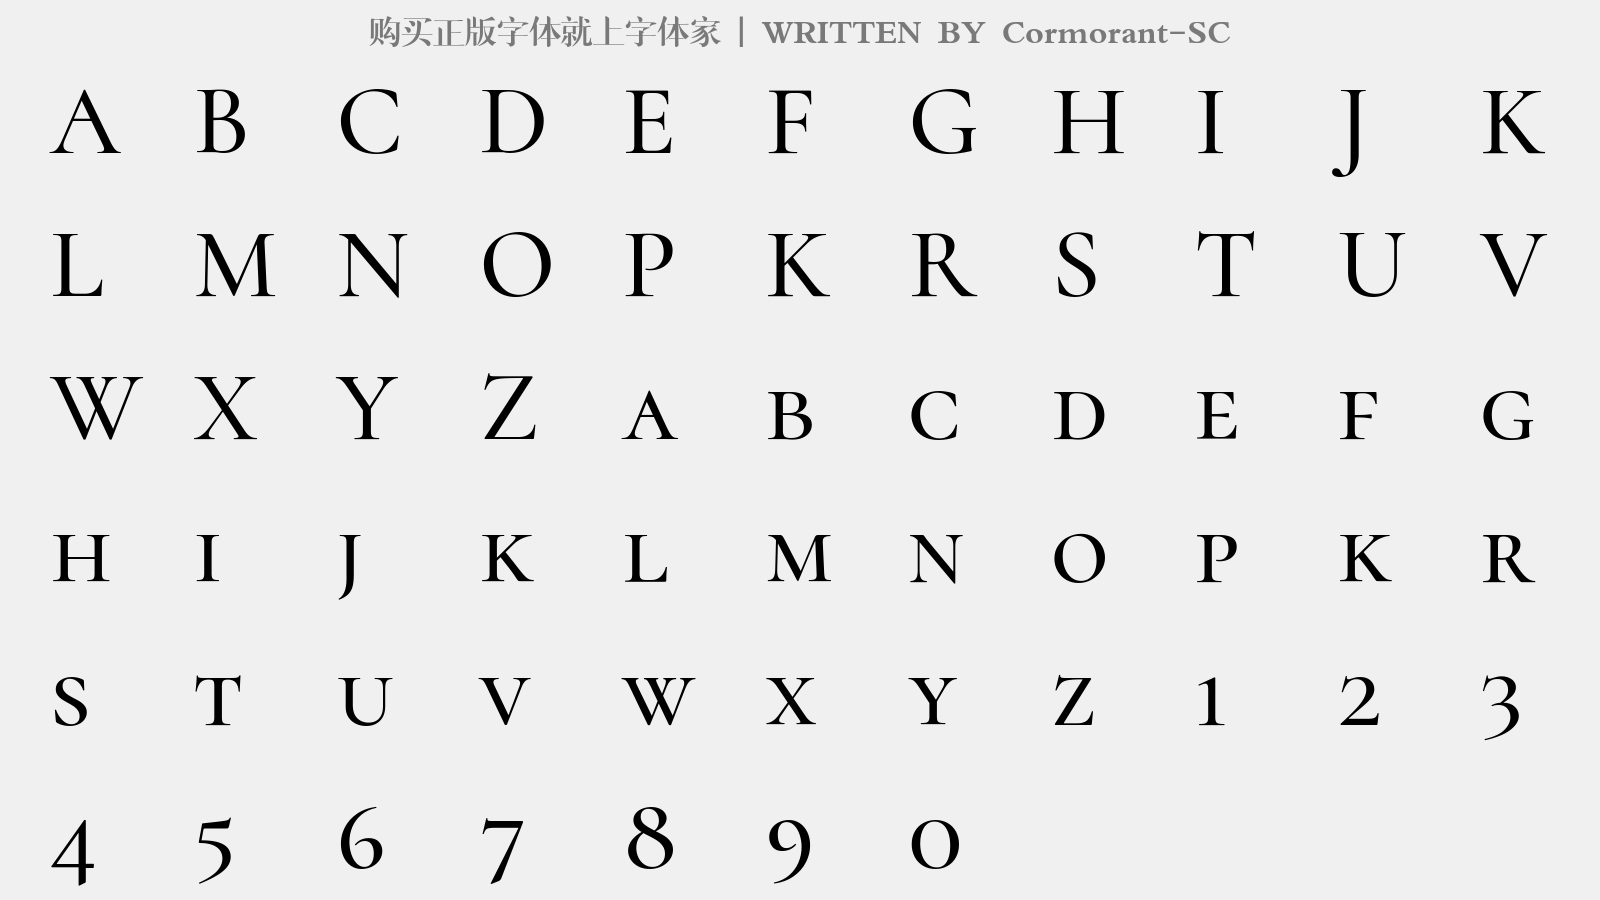 Cormorant-SC - 大写字母/小写字母/数字